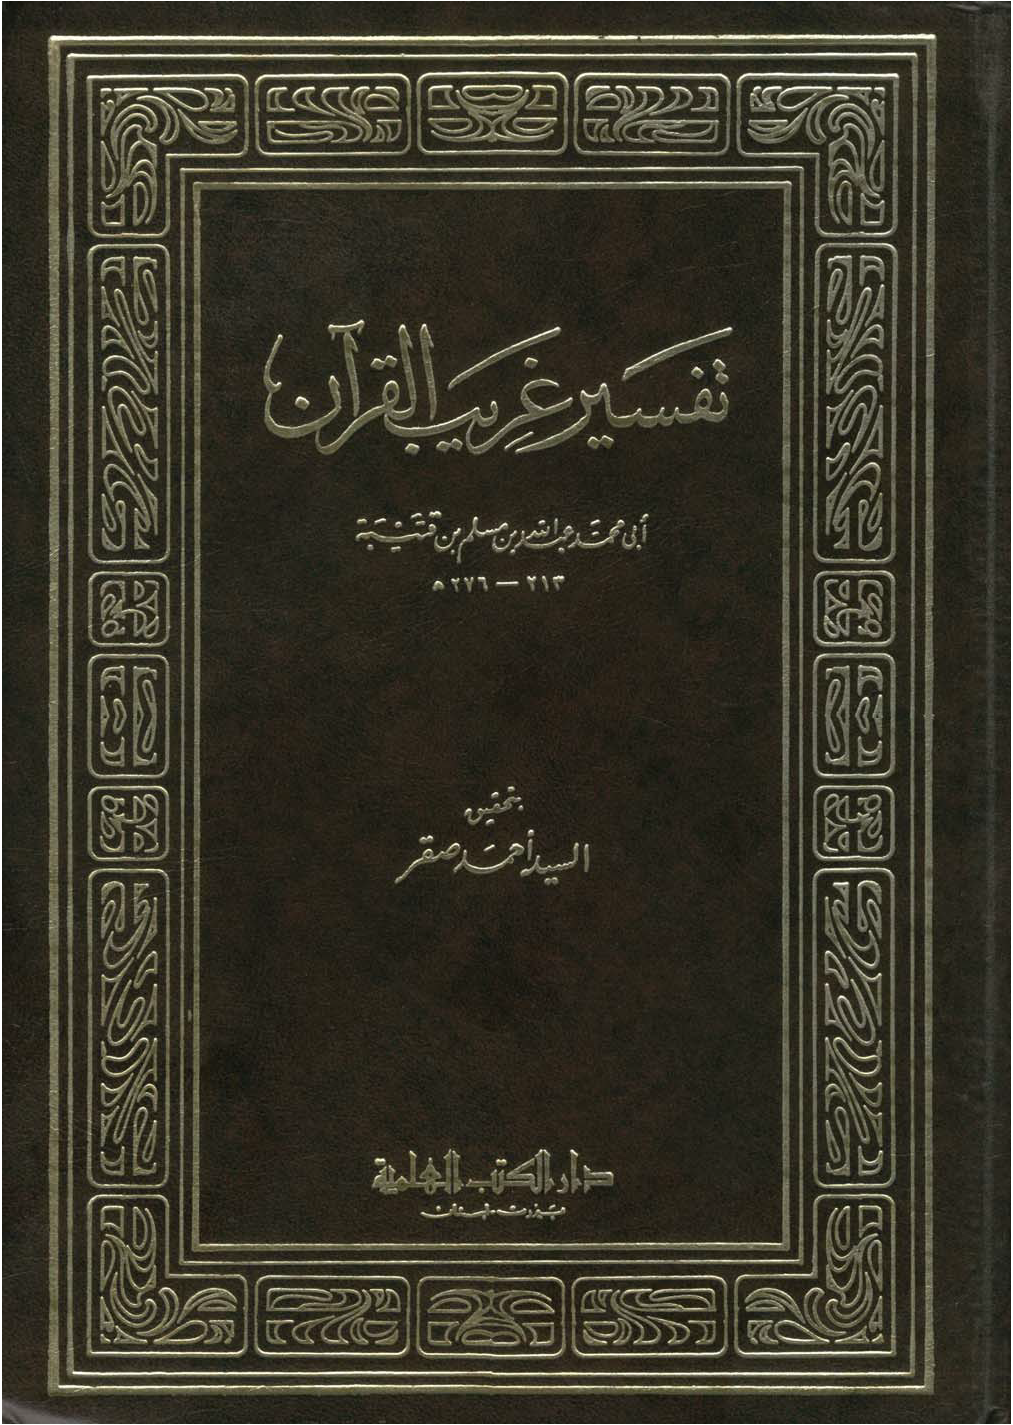 تحميل كتاب تفسير غريب القرآن (ابن قتيبة) للمؤلف: الإمام أبو محمد عبد الله بن مسلم بن قتيبة الدينوري (ت 276)